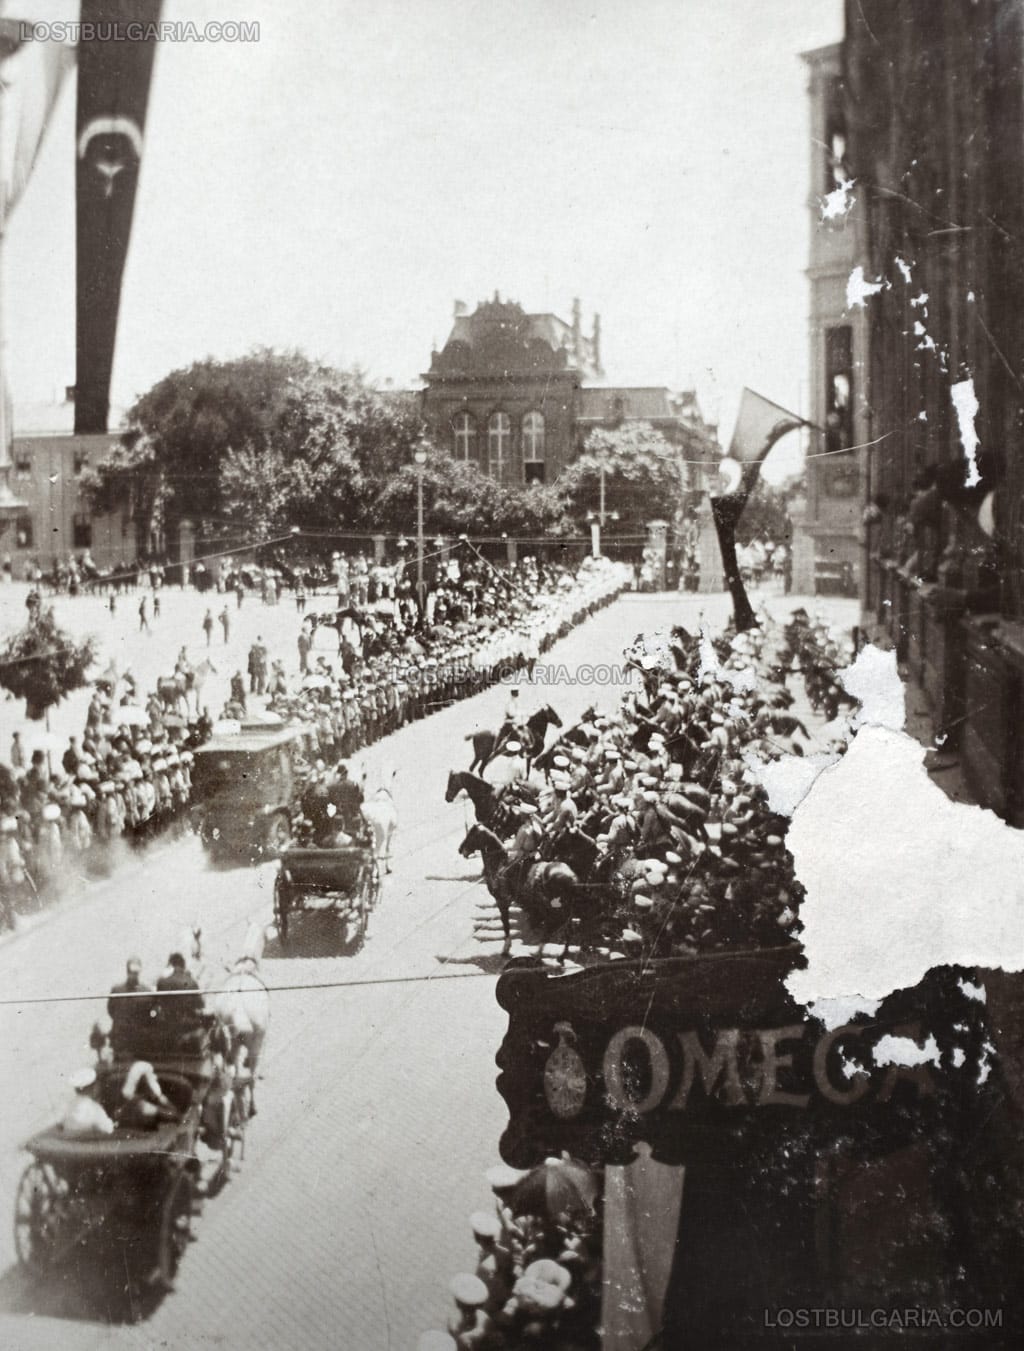 Процесията за посрещането на турския престолонаследник Принц Юсуф Изедин на път за Двореца по улица "Търговска", София 1910 г.